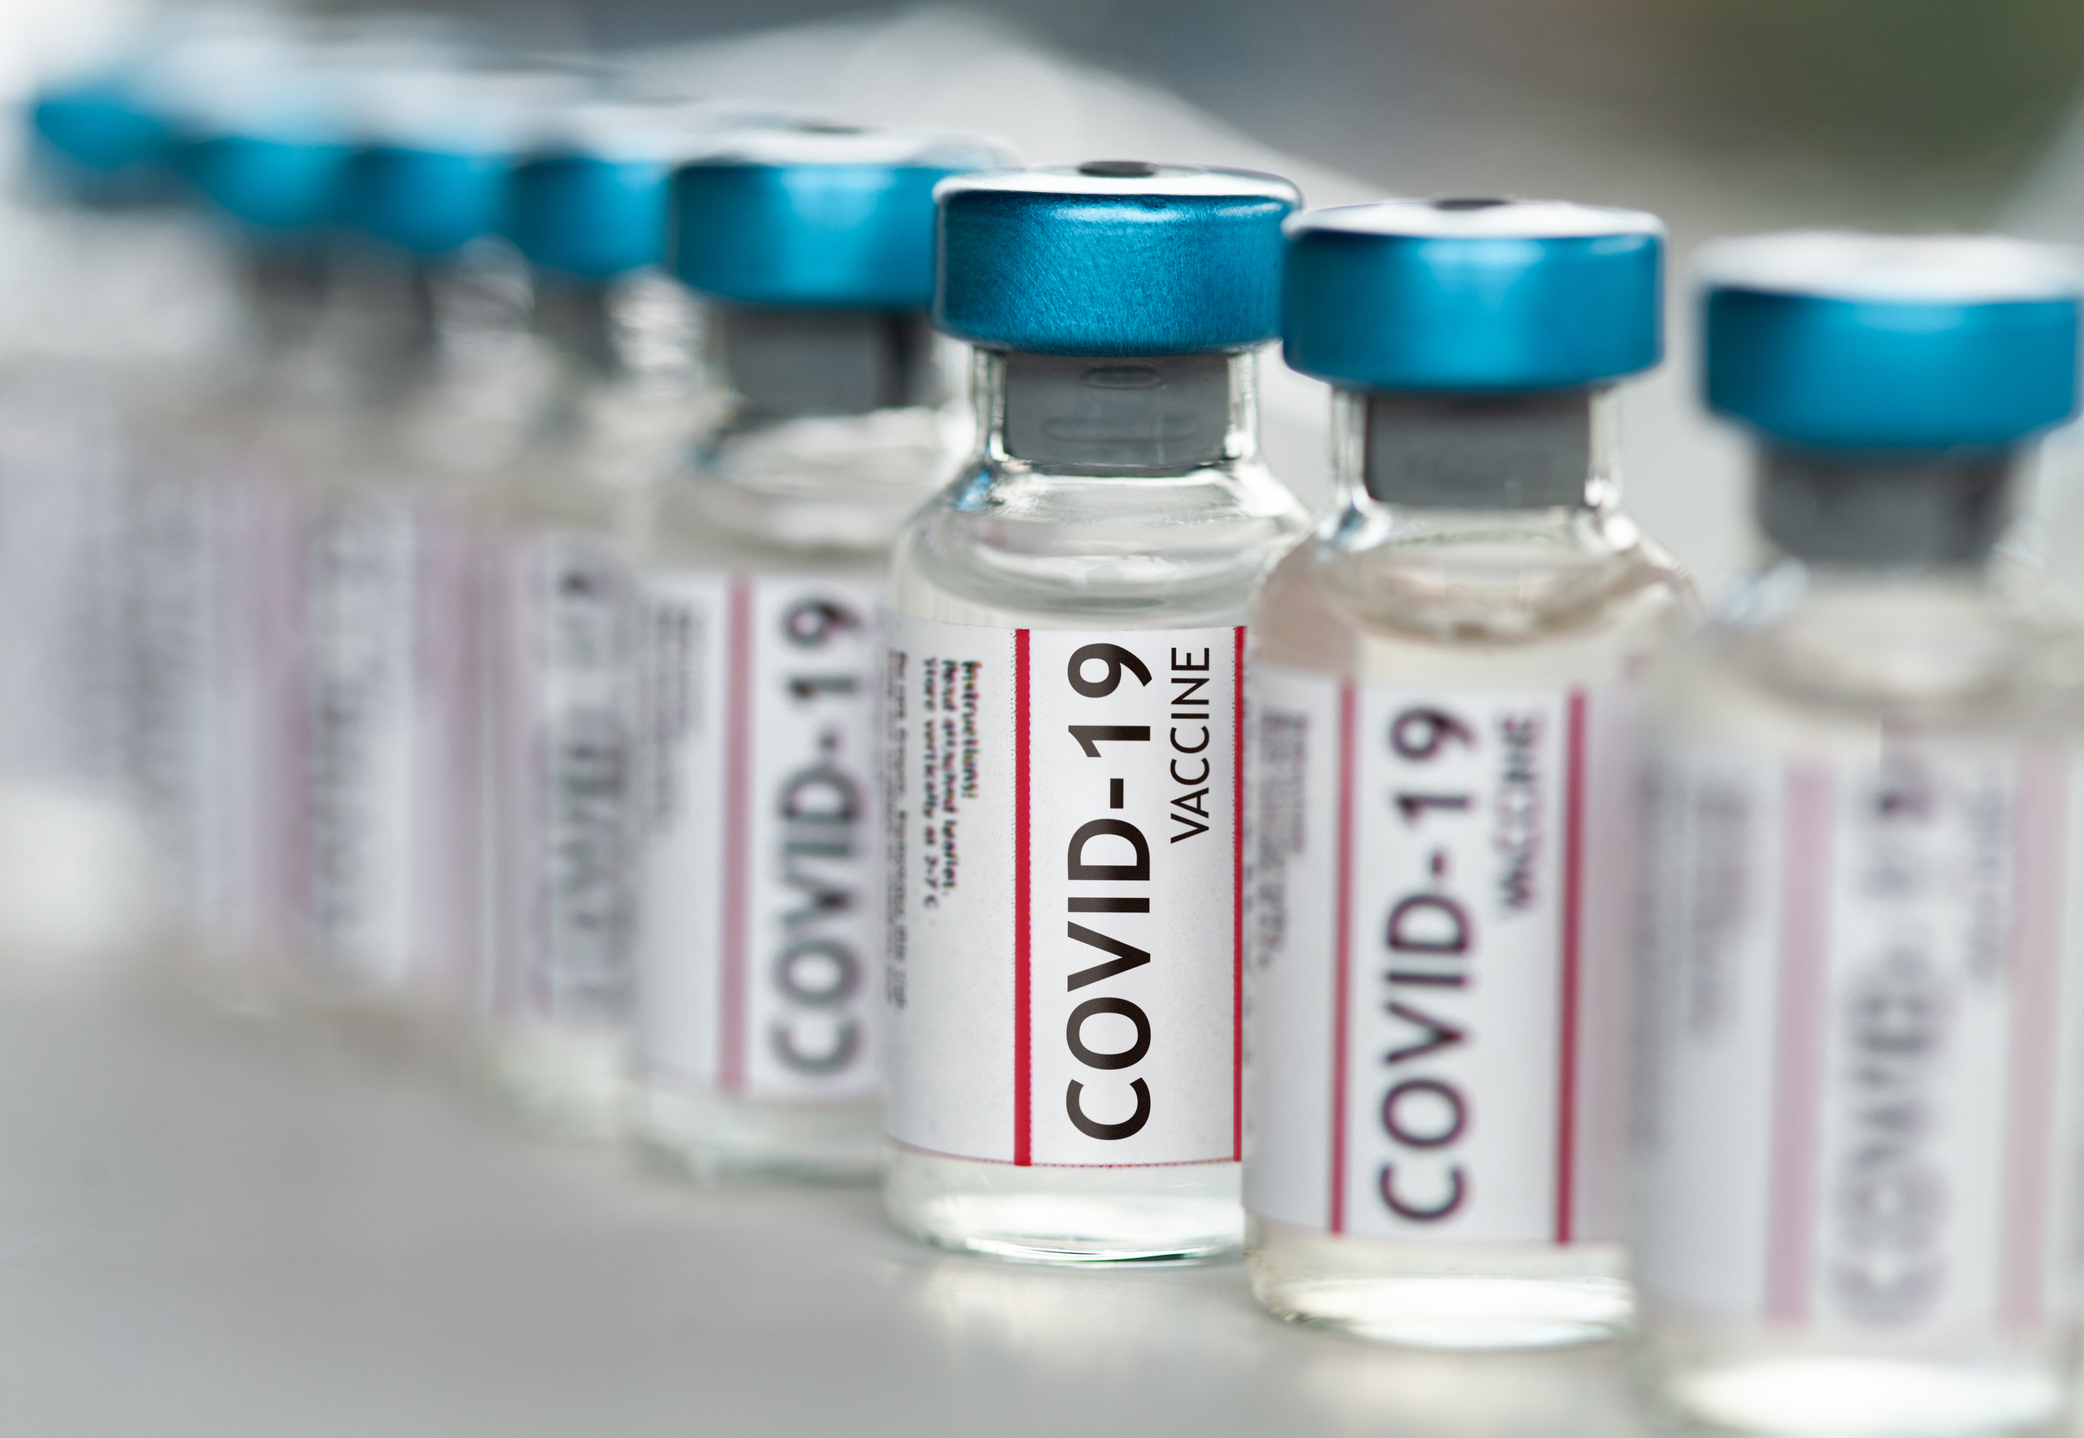 Un doctor din SUA a avut o reacţie alergică severă la vaccinul anti-Covid produs de Moderna. Cum se simte